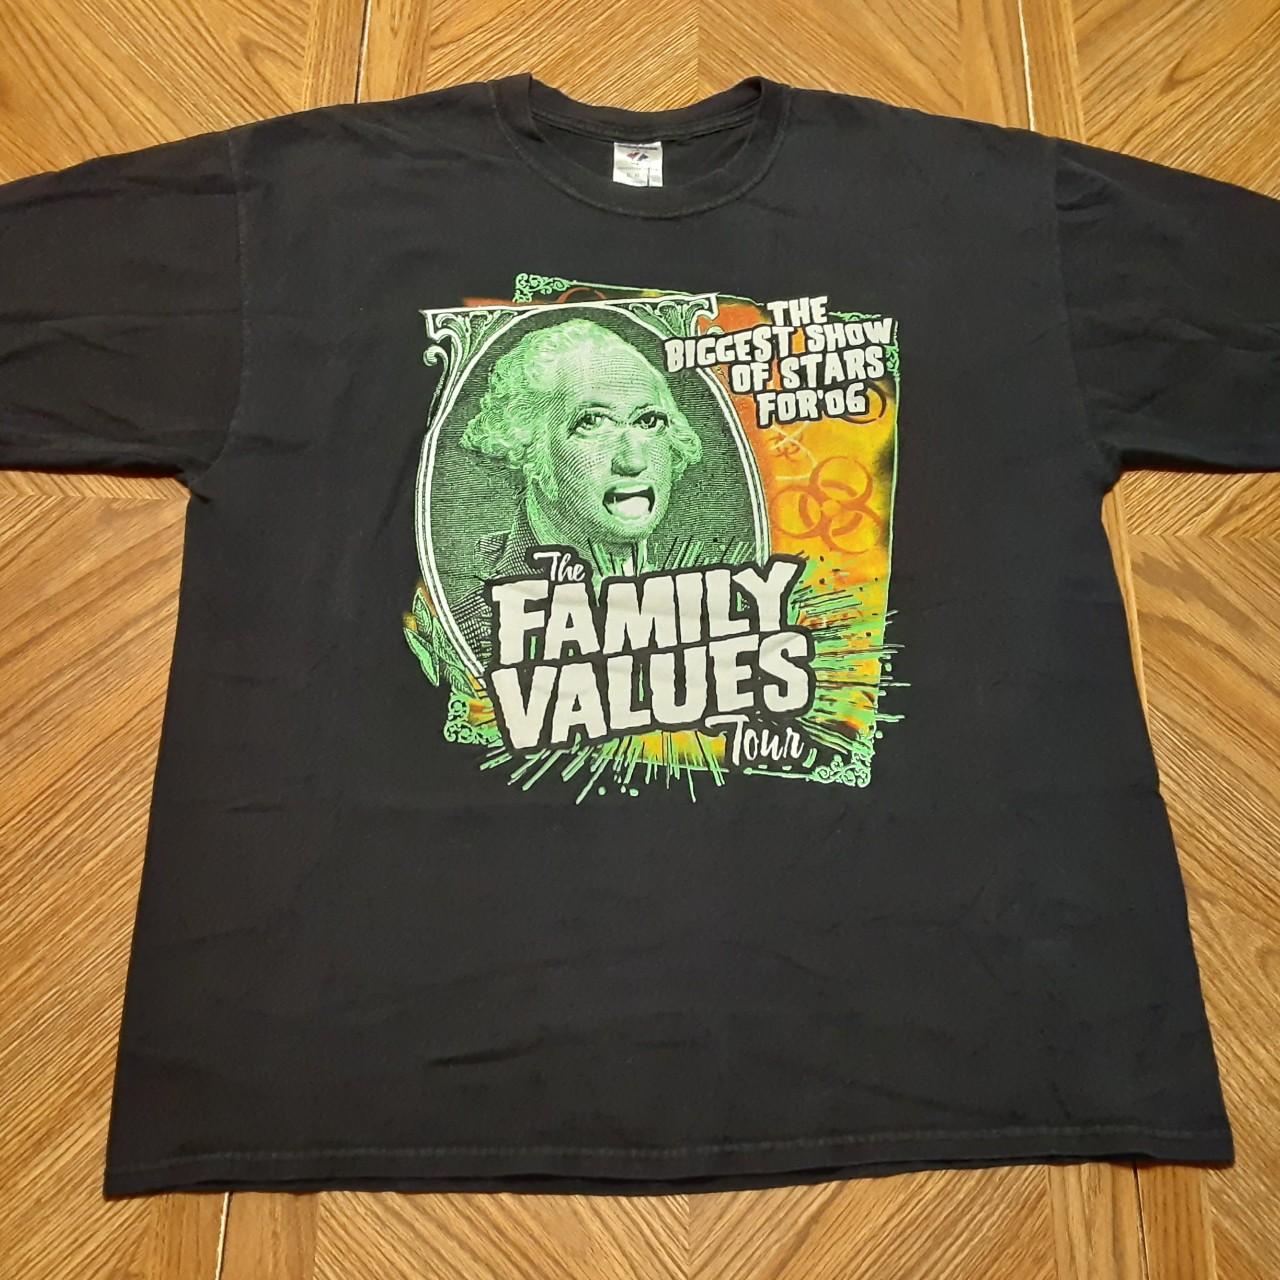 Vintage Family Values Tour T-Shirt, Korn, Deftones.